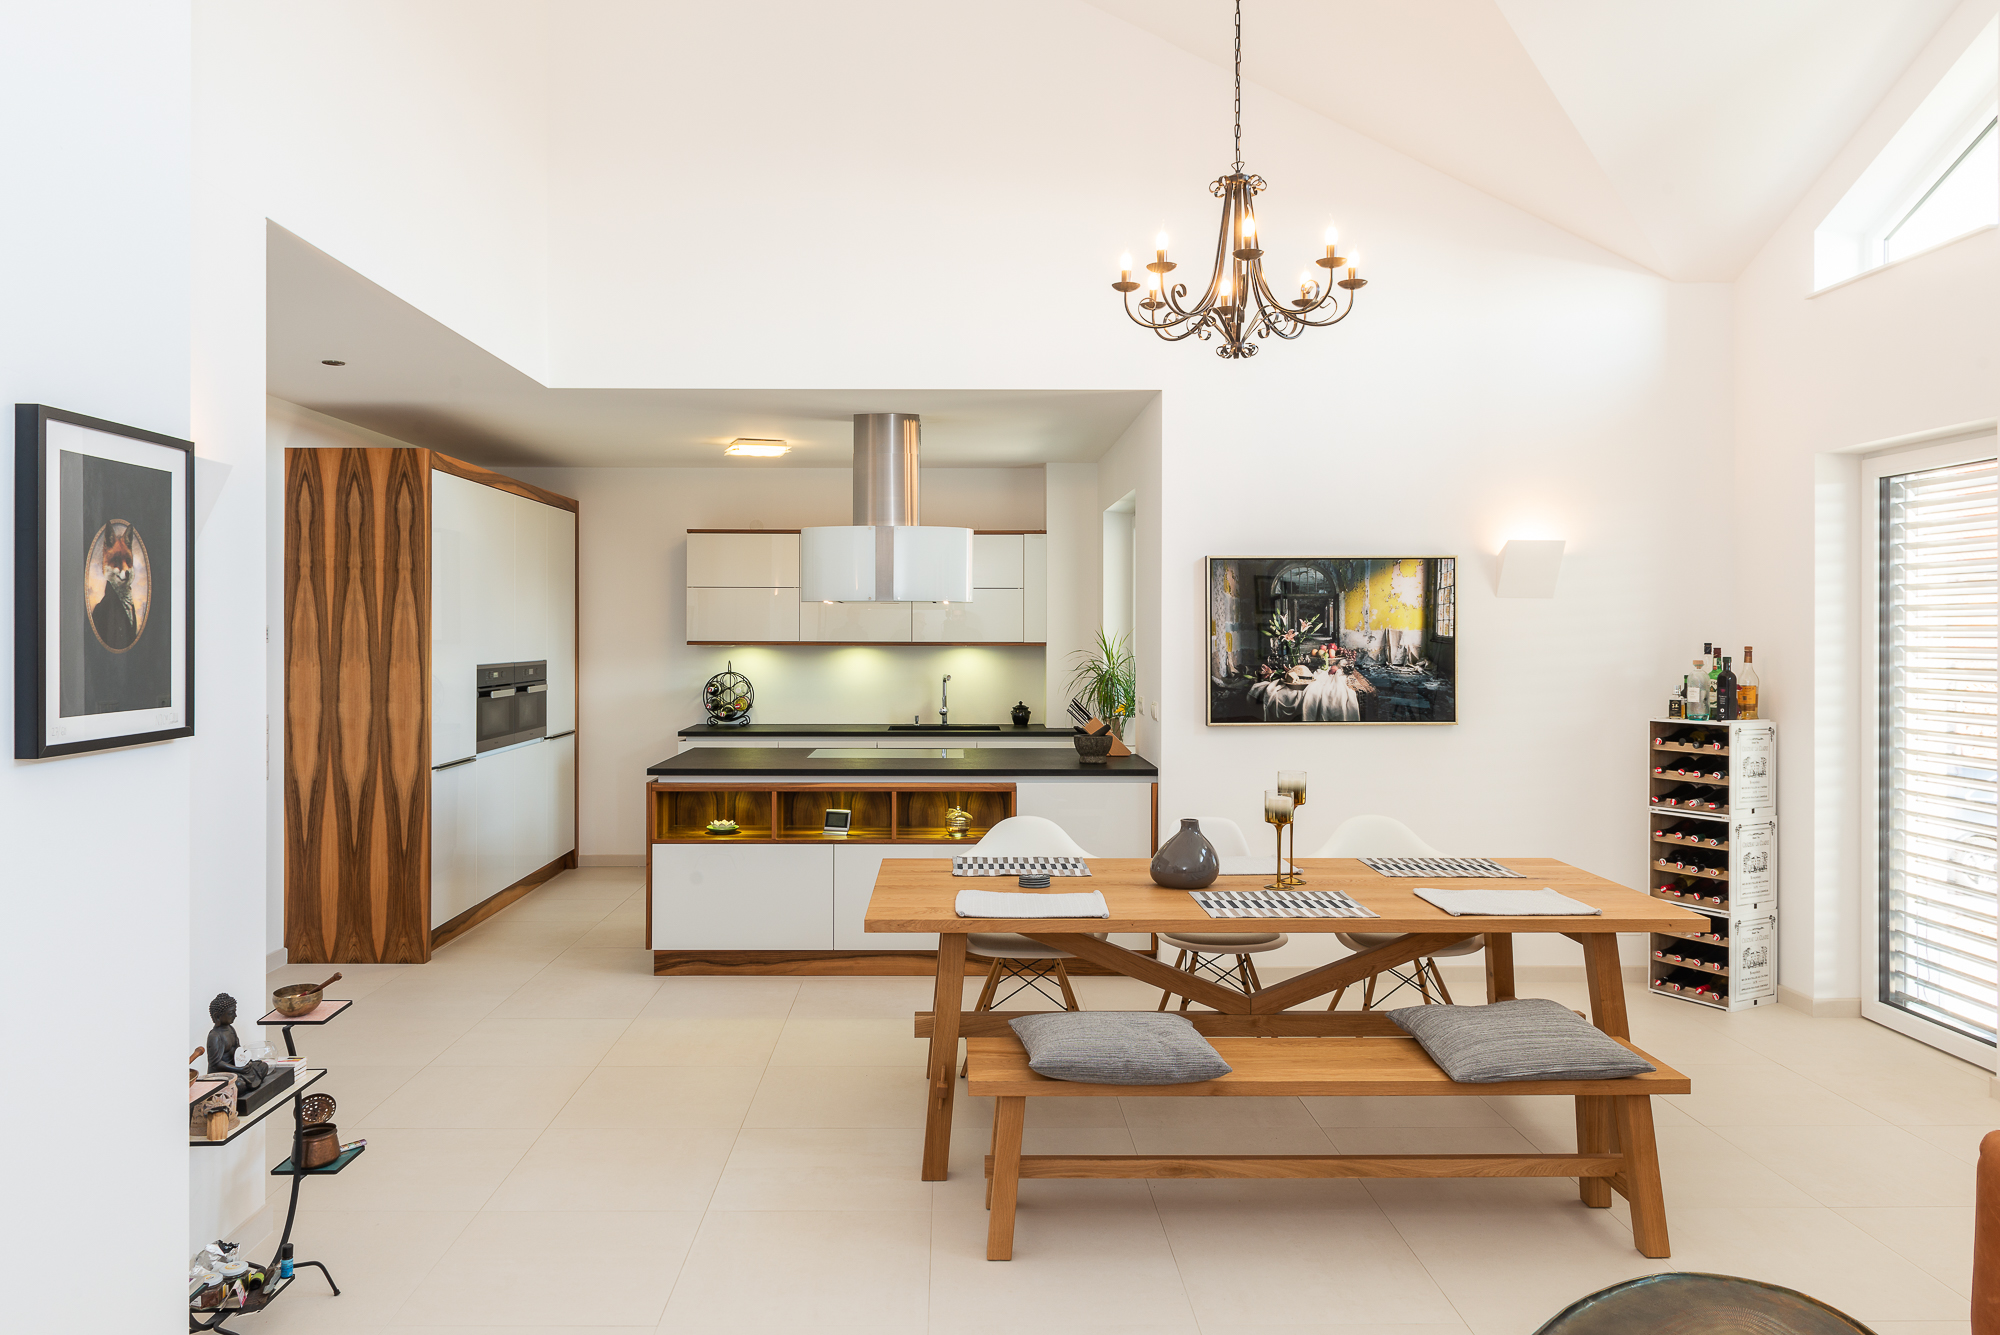 Aufnahme von Küche und Wohnzimmer mit Schwab-Tischlerei Möbel aus Commercial-Portfolio